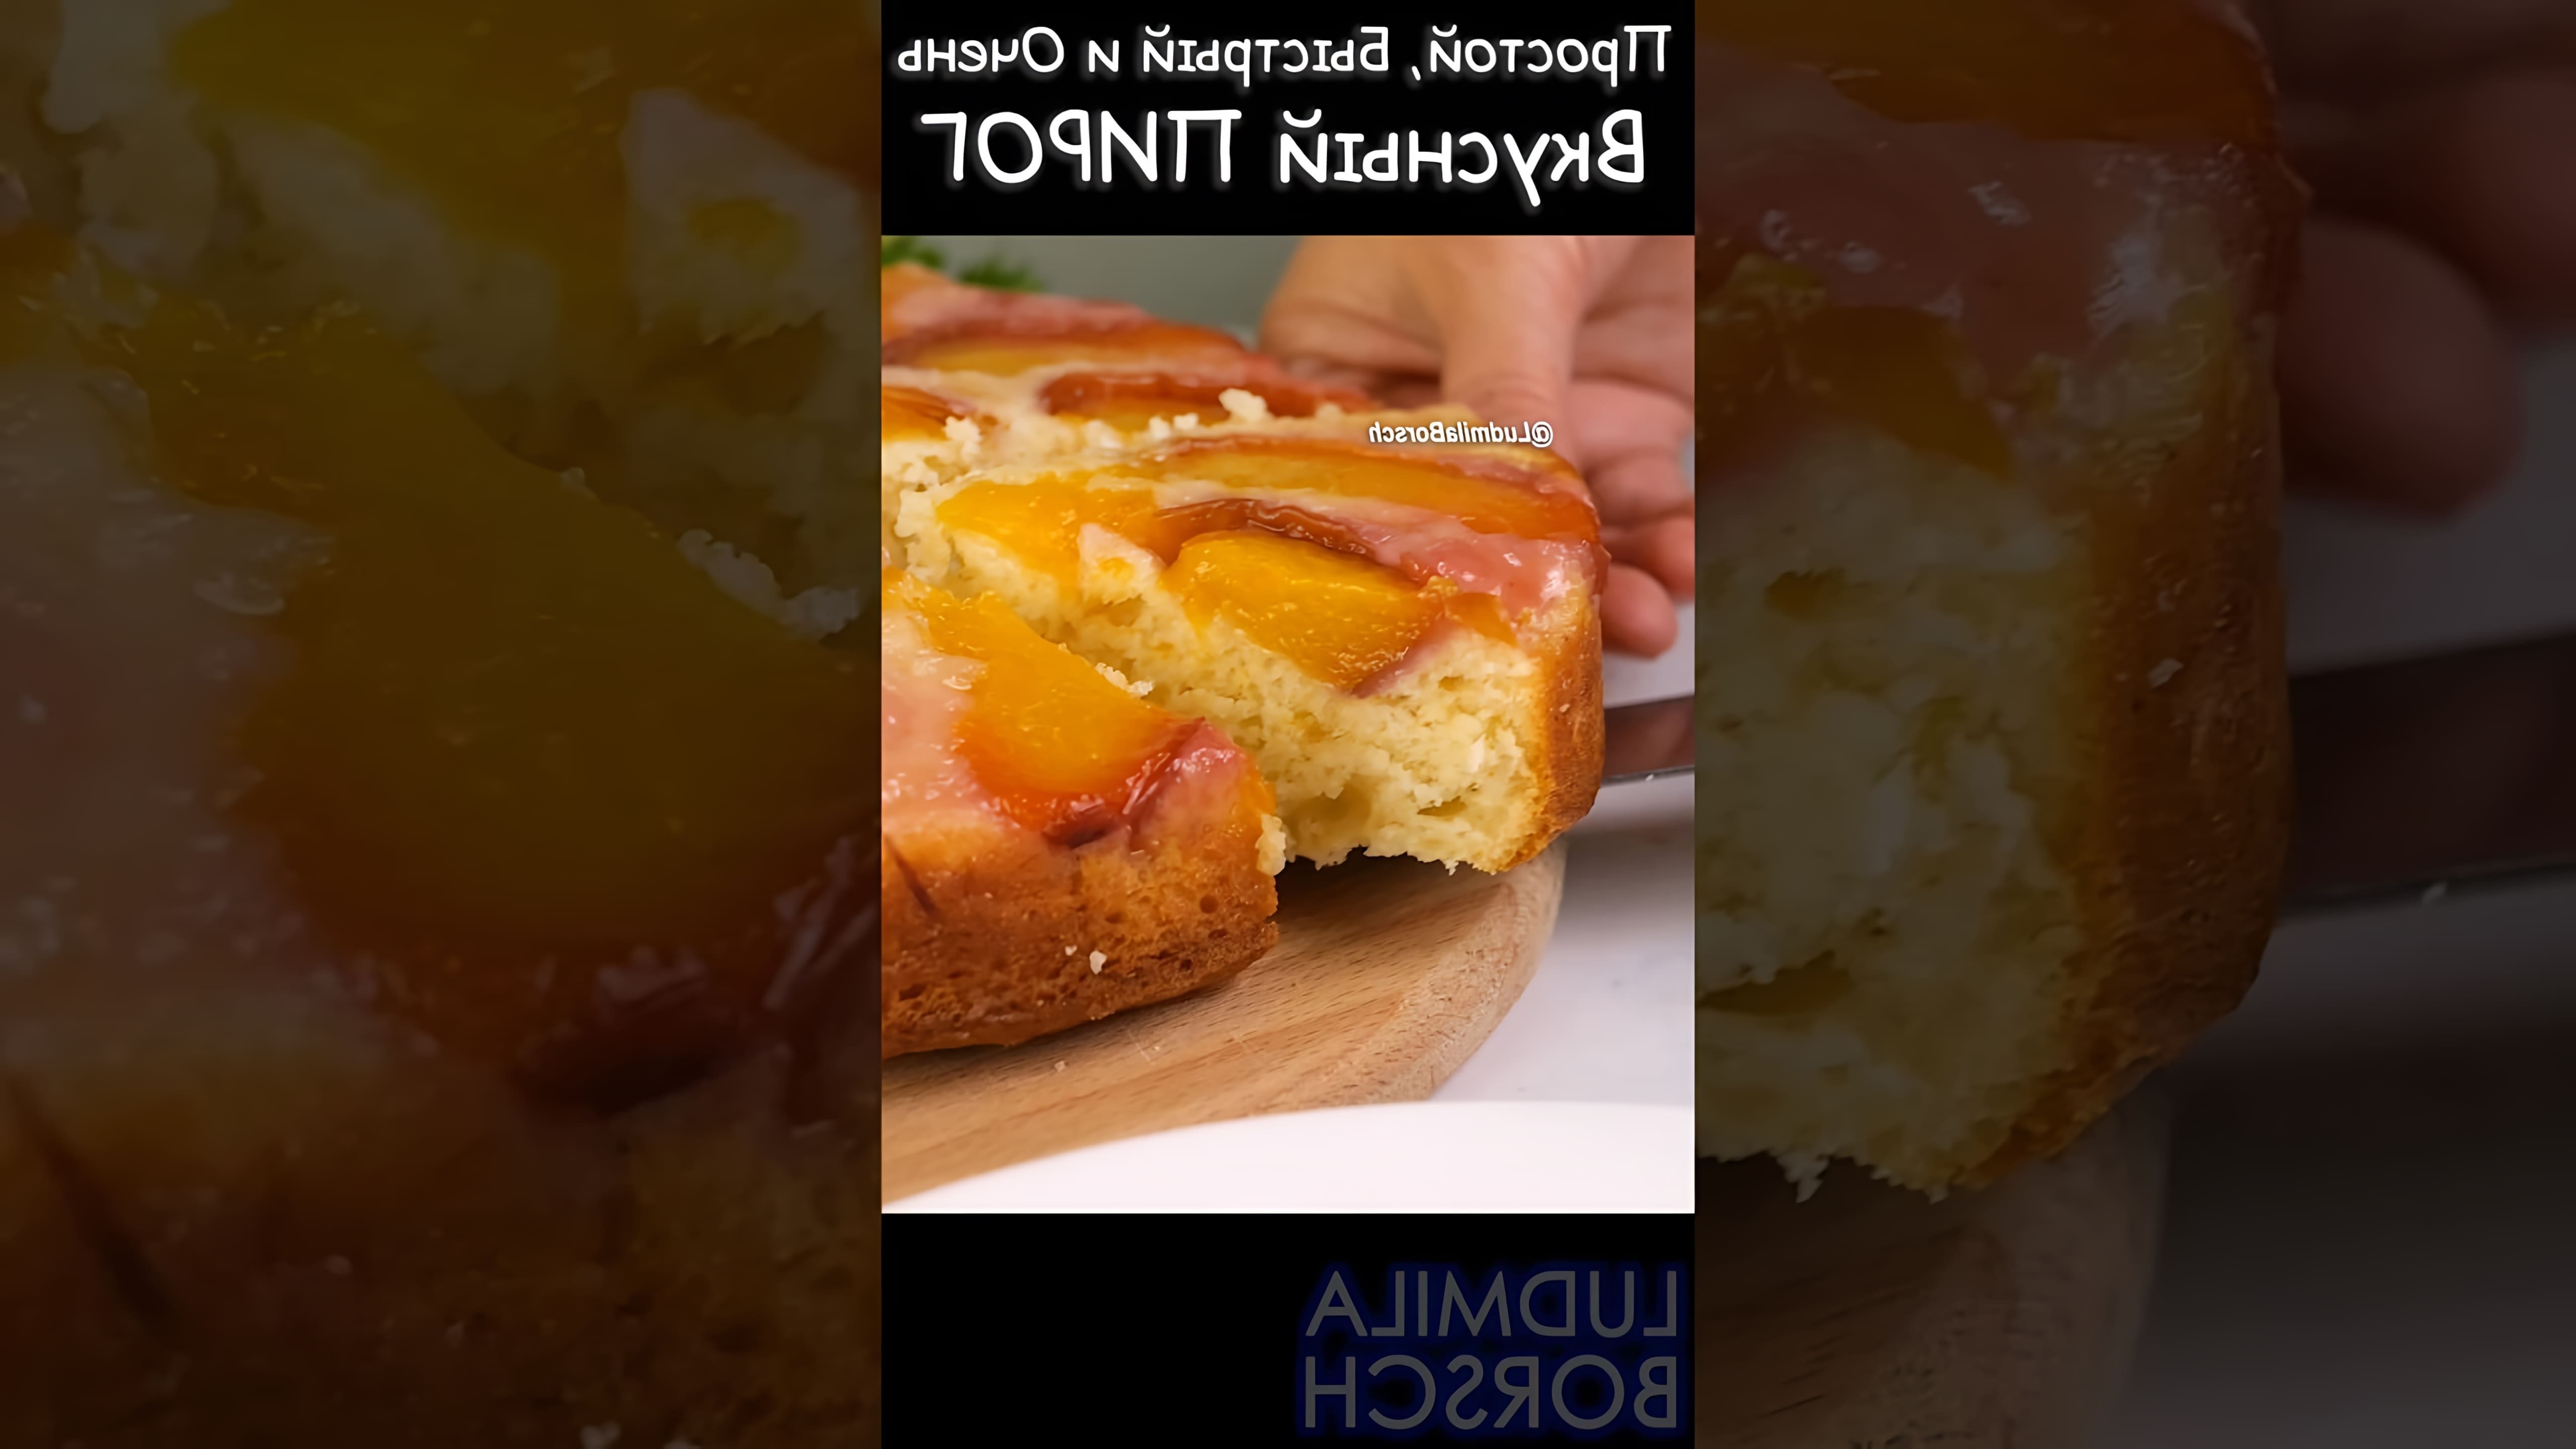 В этом видео демонстрируется рецепт приготовления персикового пирога на кефире